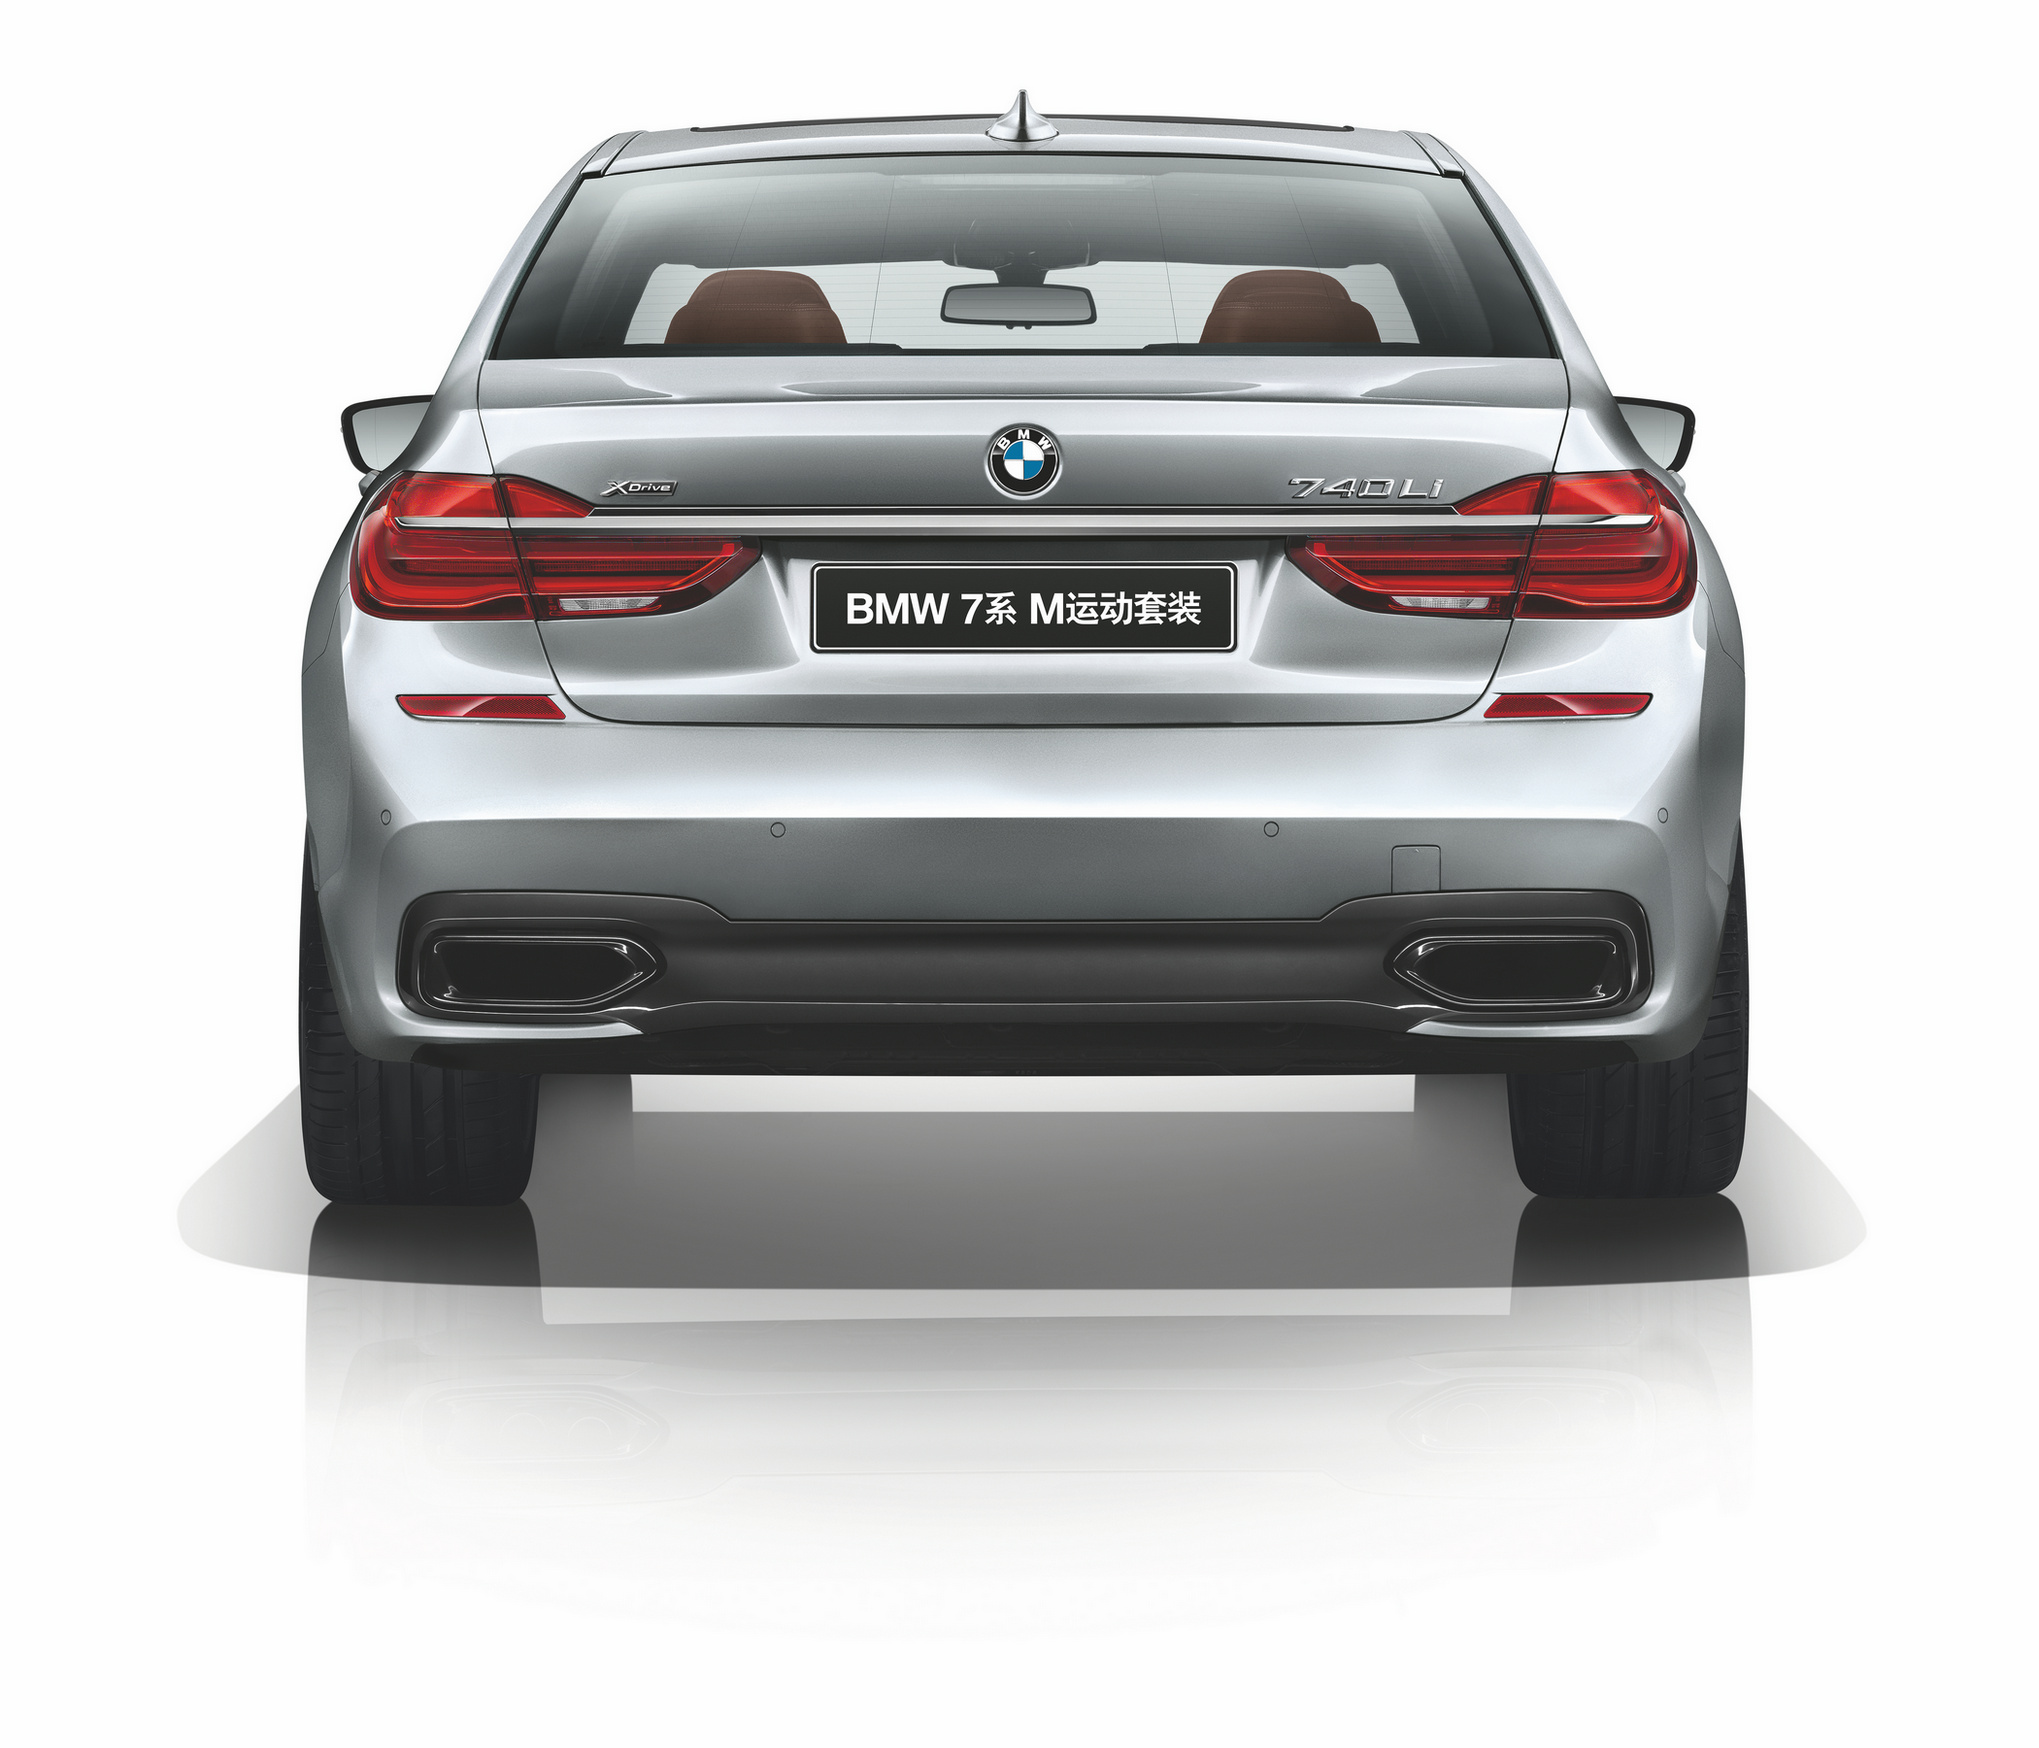 2018款BMW7系于今日正式上市